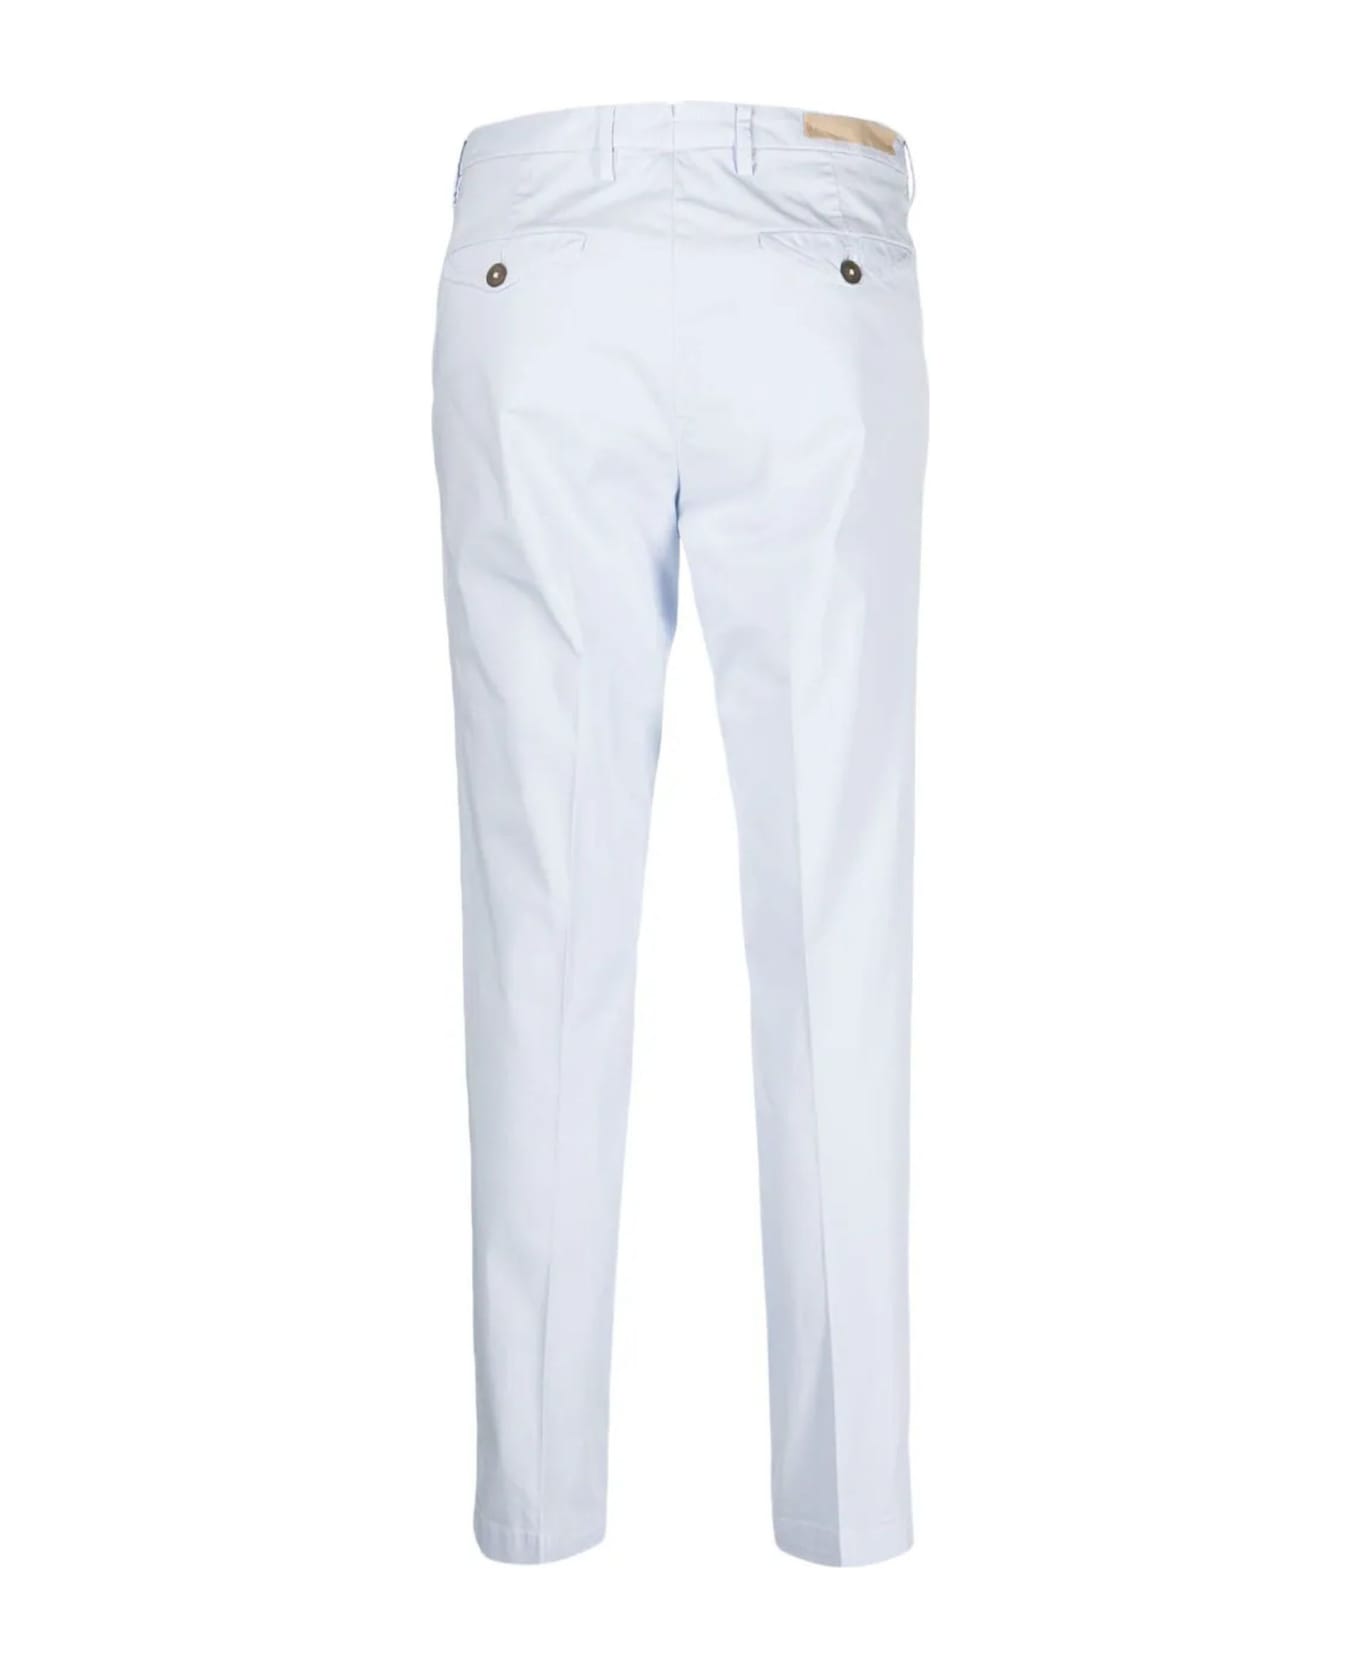 Briglia 1949 White Cotton Trousers - Light Blue ボトムス